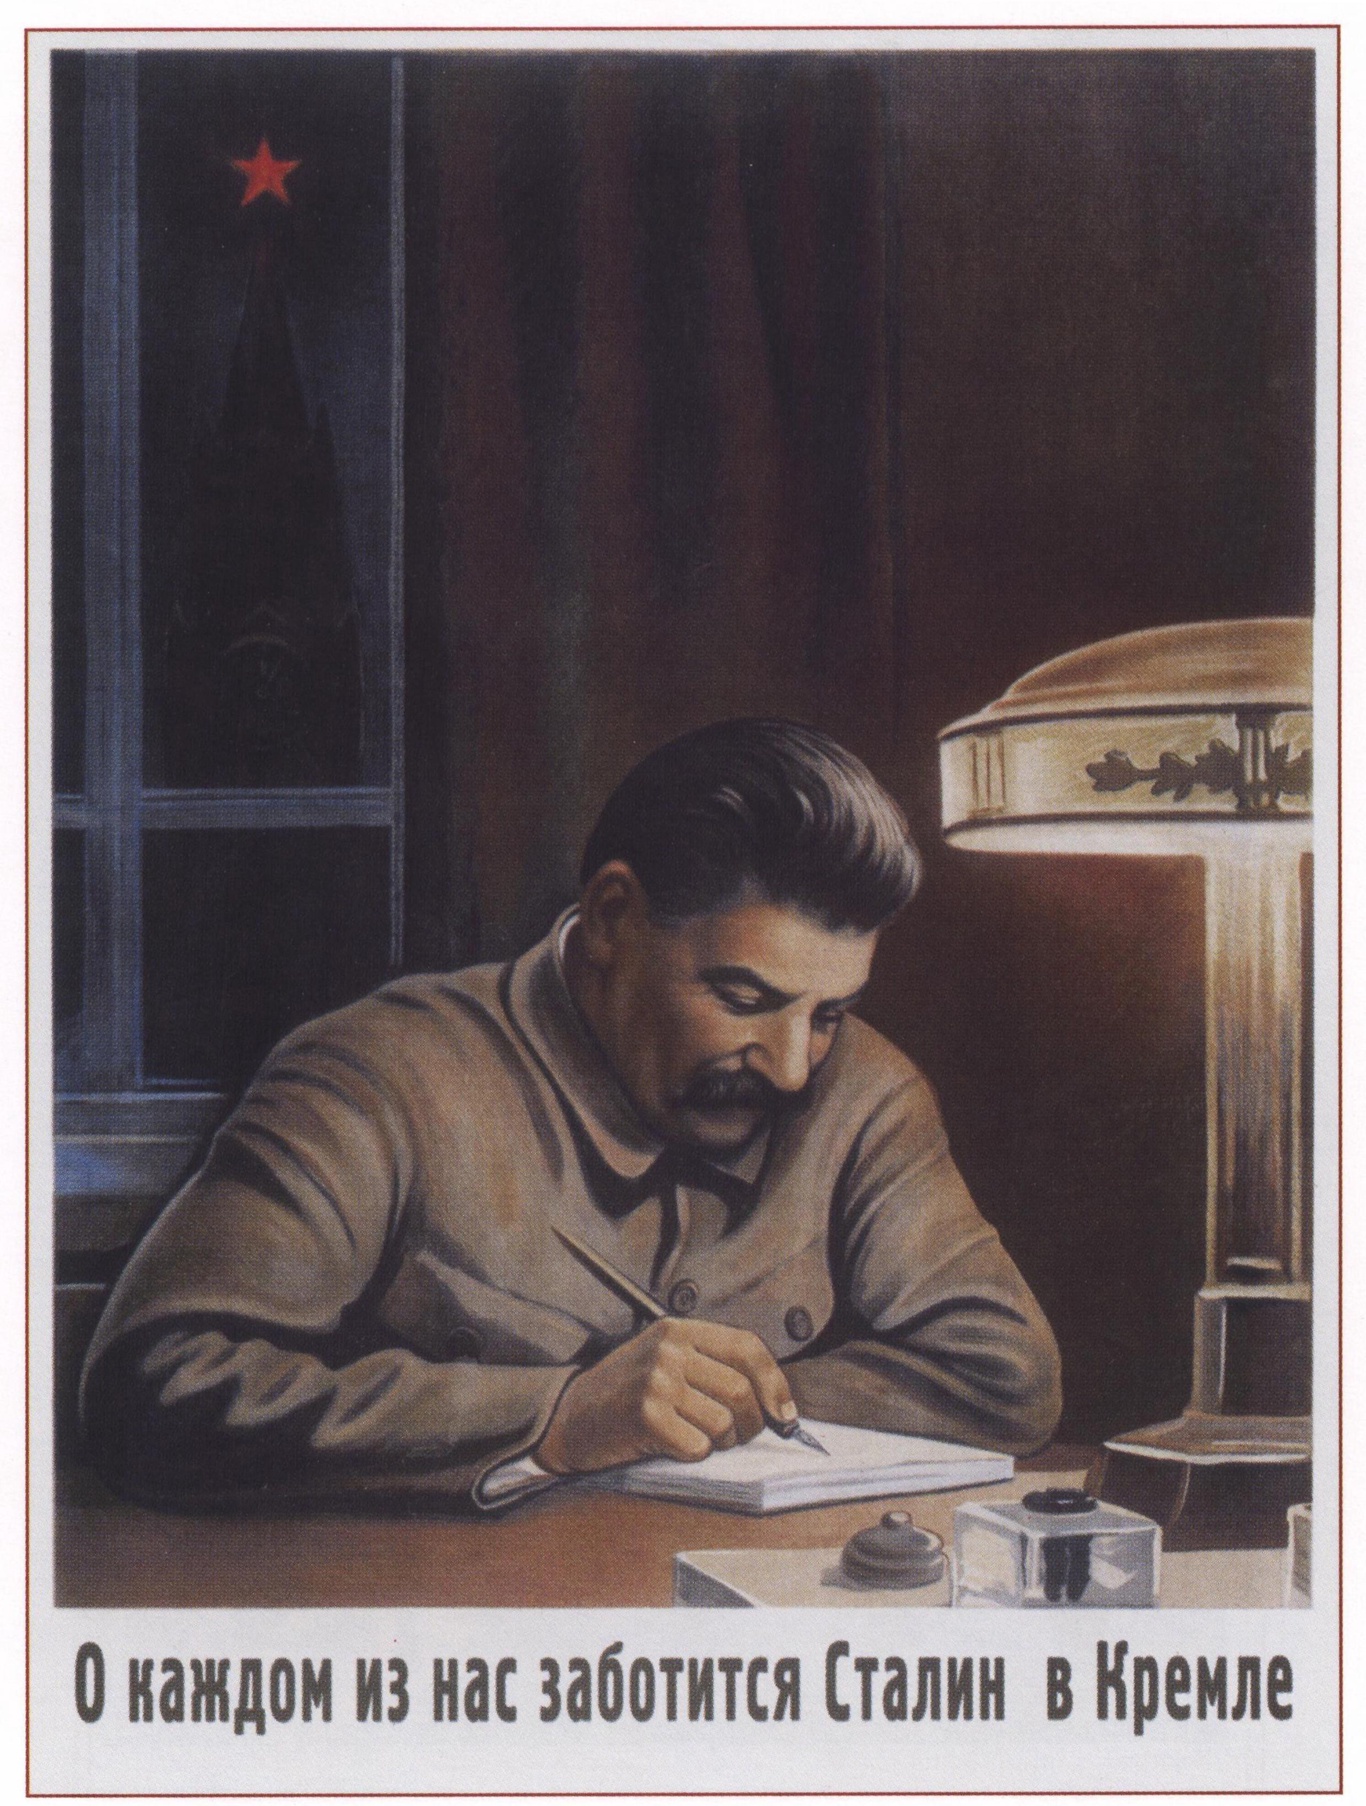 Сталин - 1940 г. Говорков В. О каждом из нас заботится Сталин в Кремле